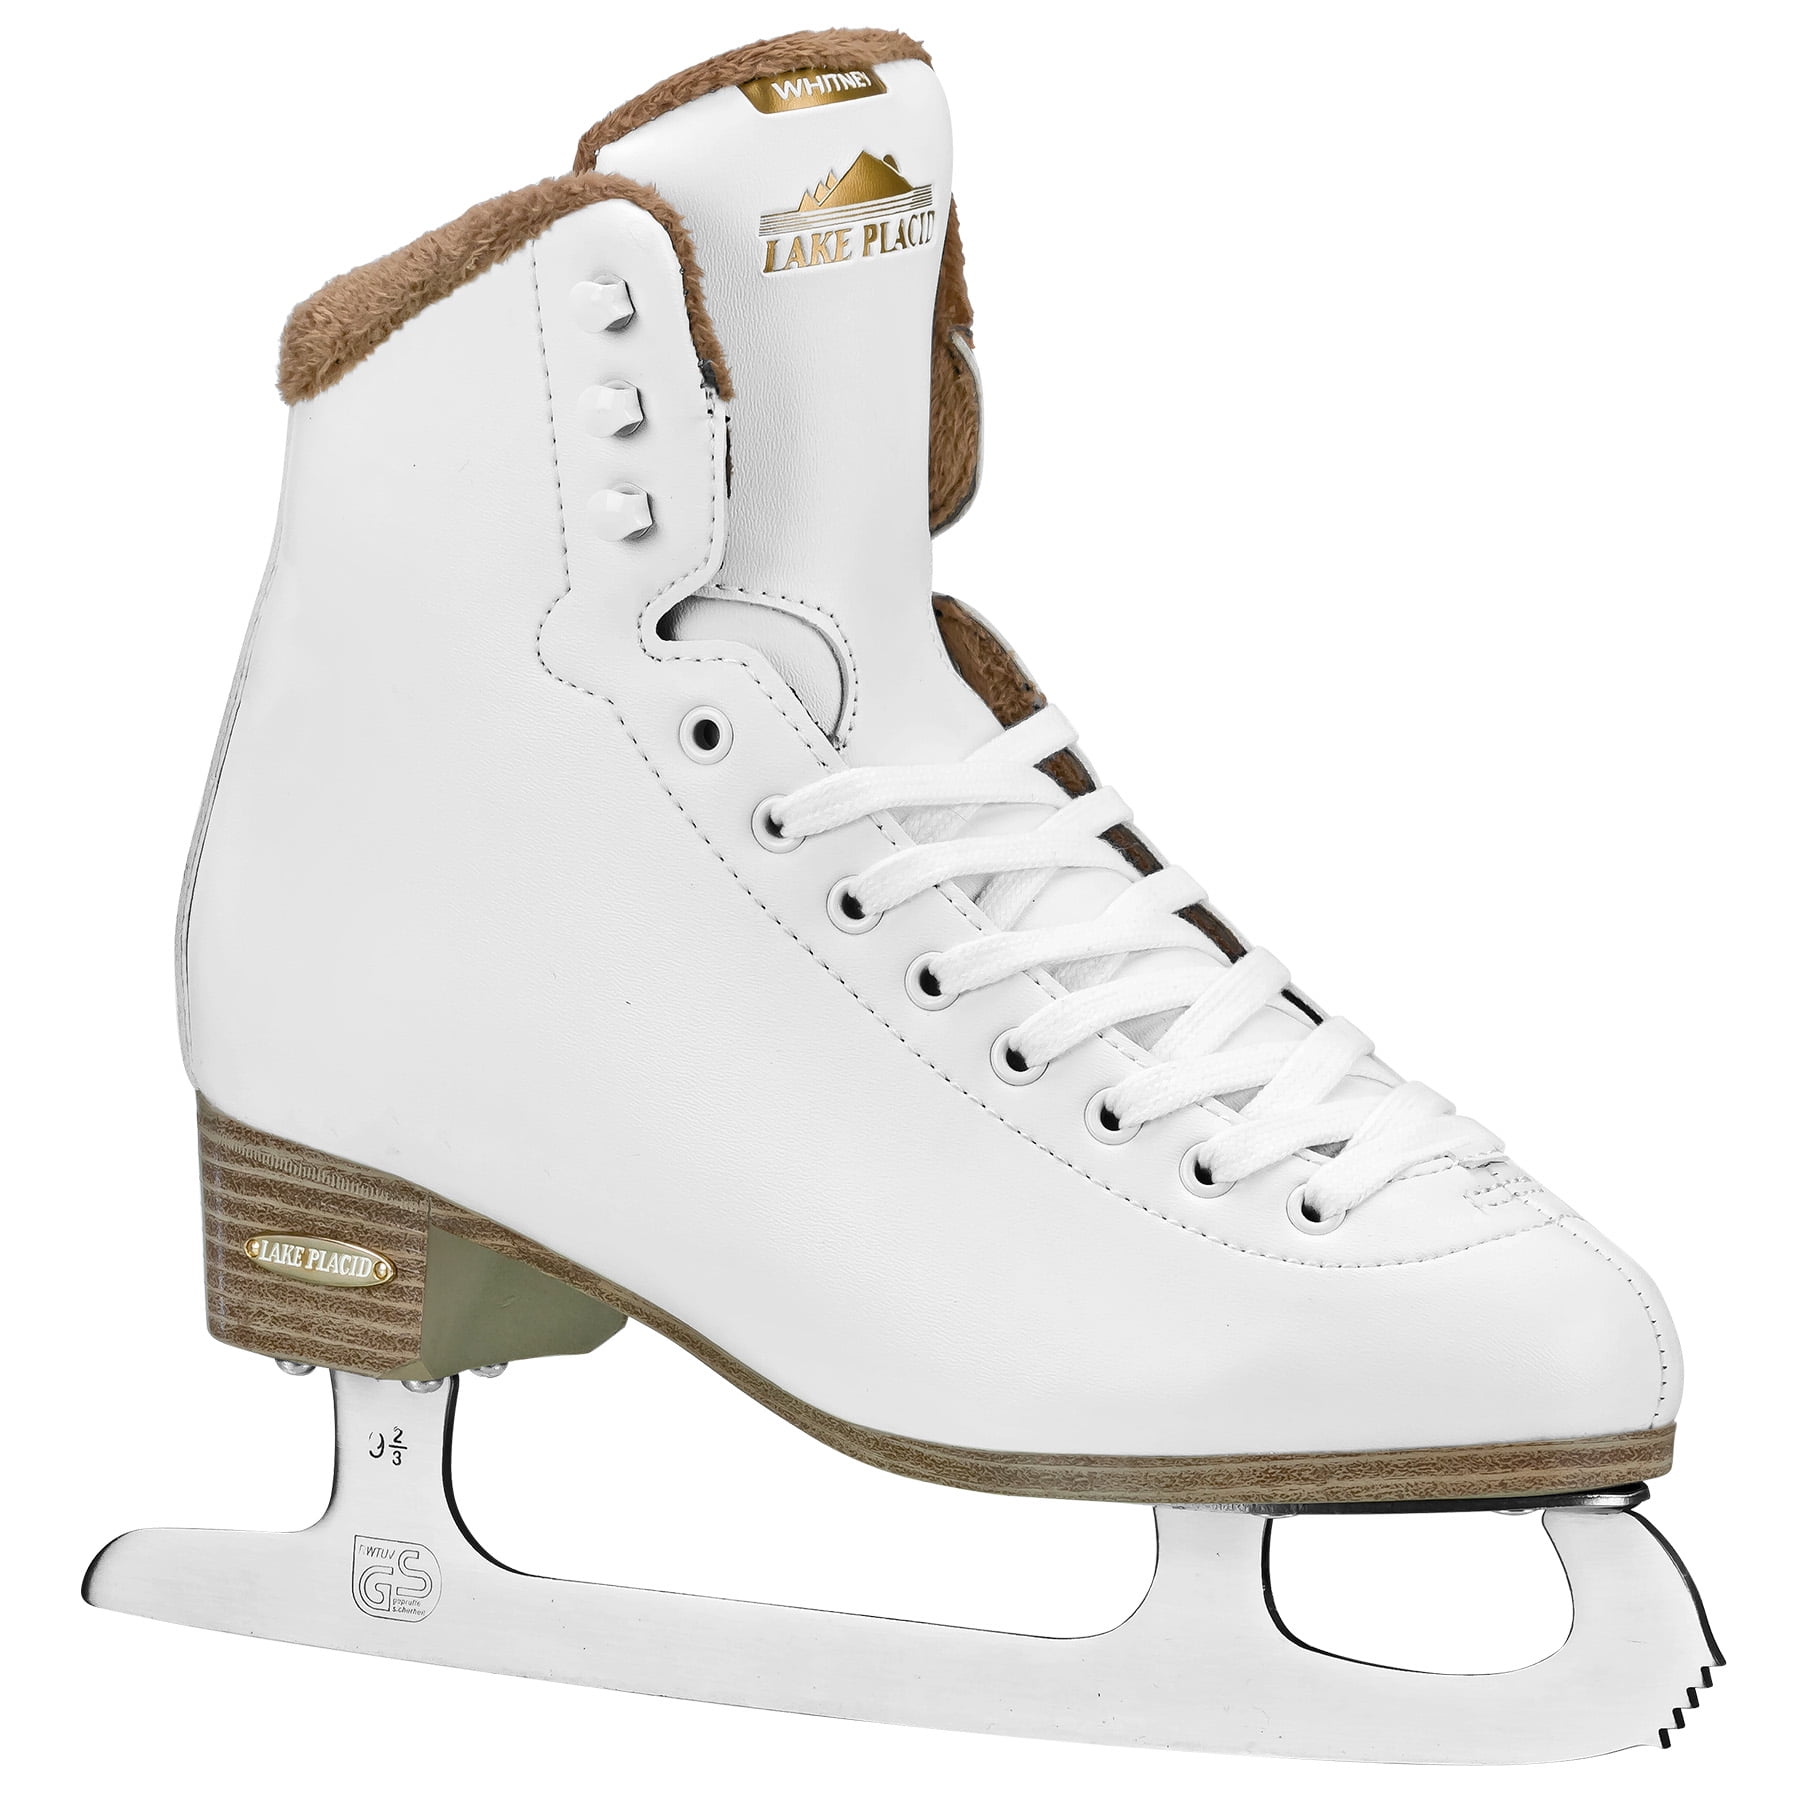 Verbero Cypress Senior Ice Hockey Skates White *NEW* 